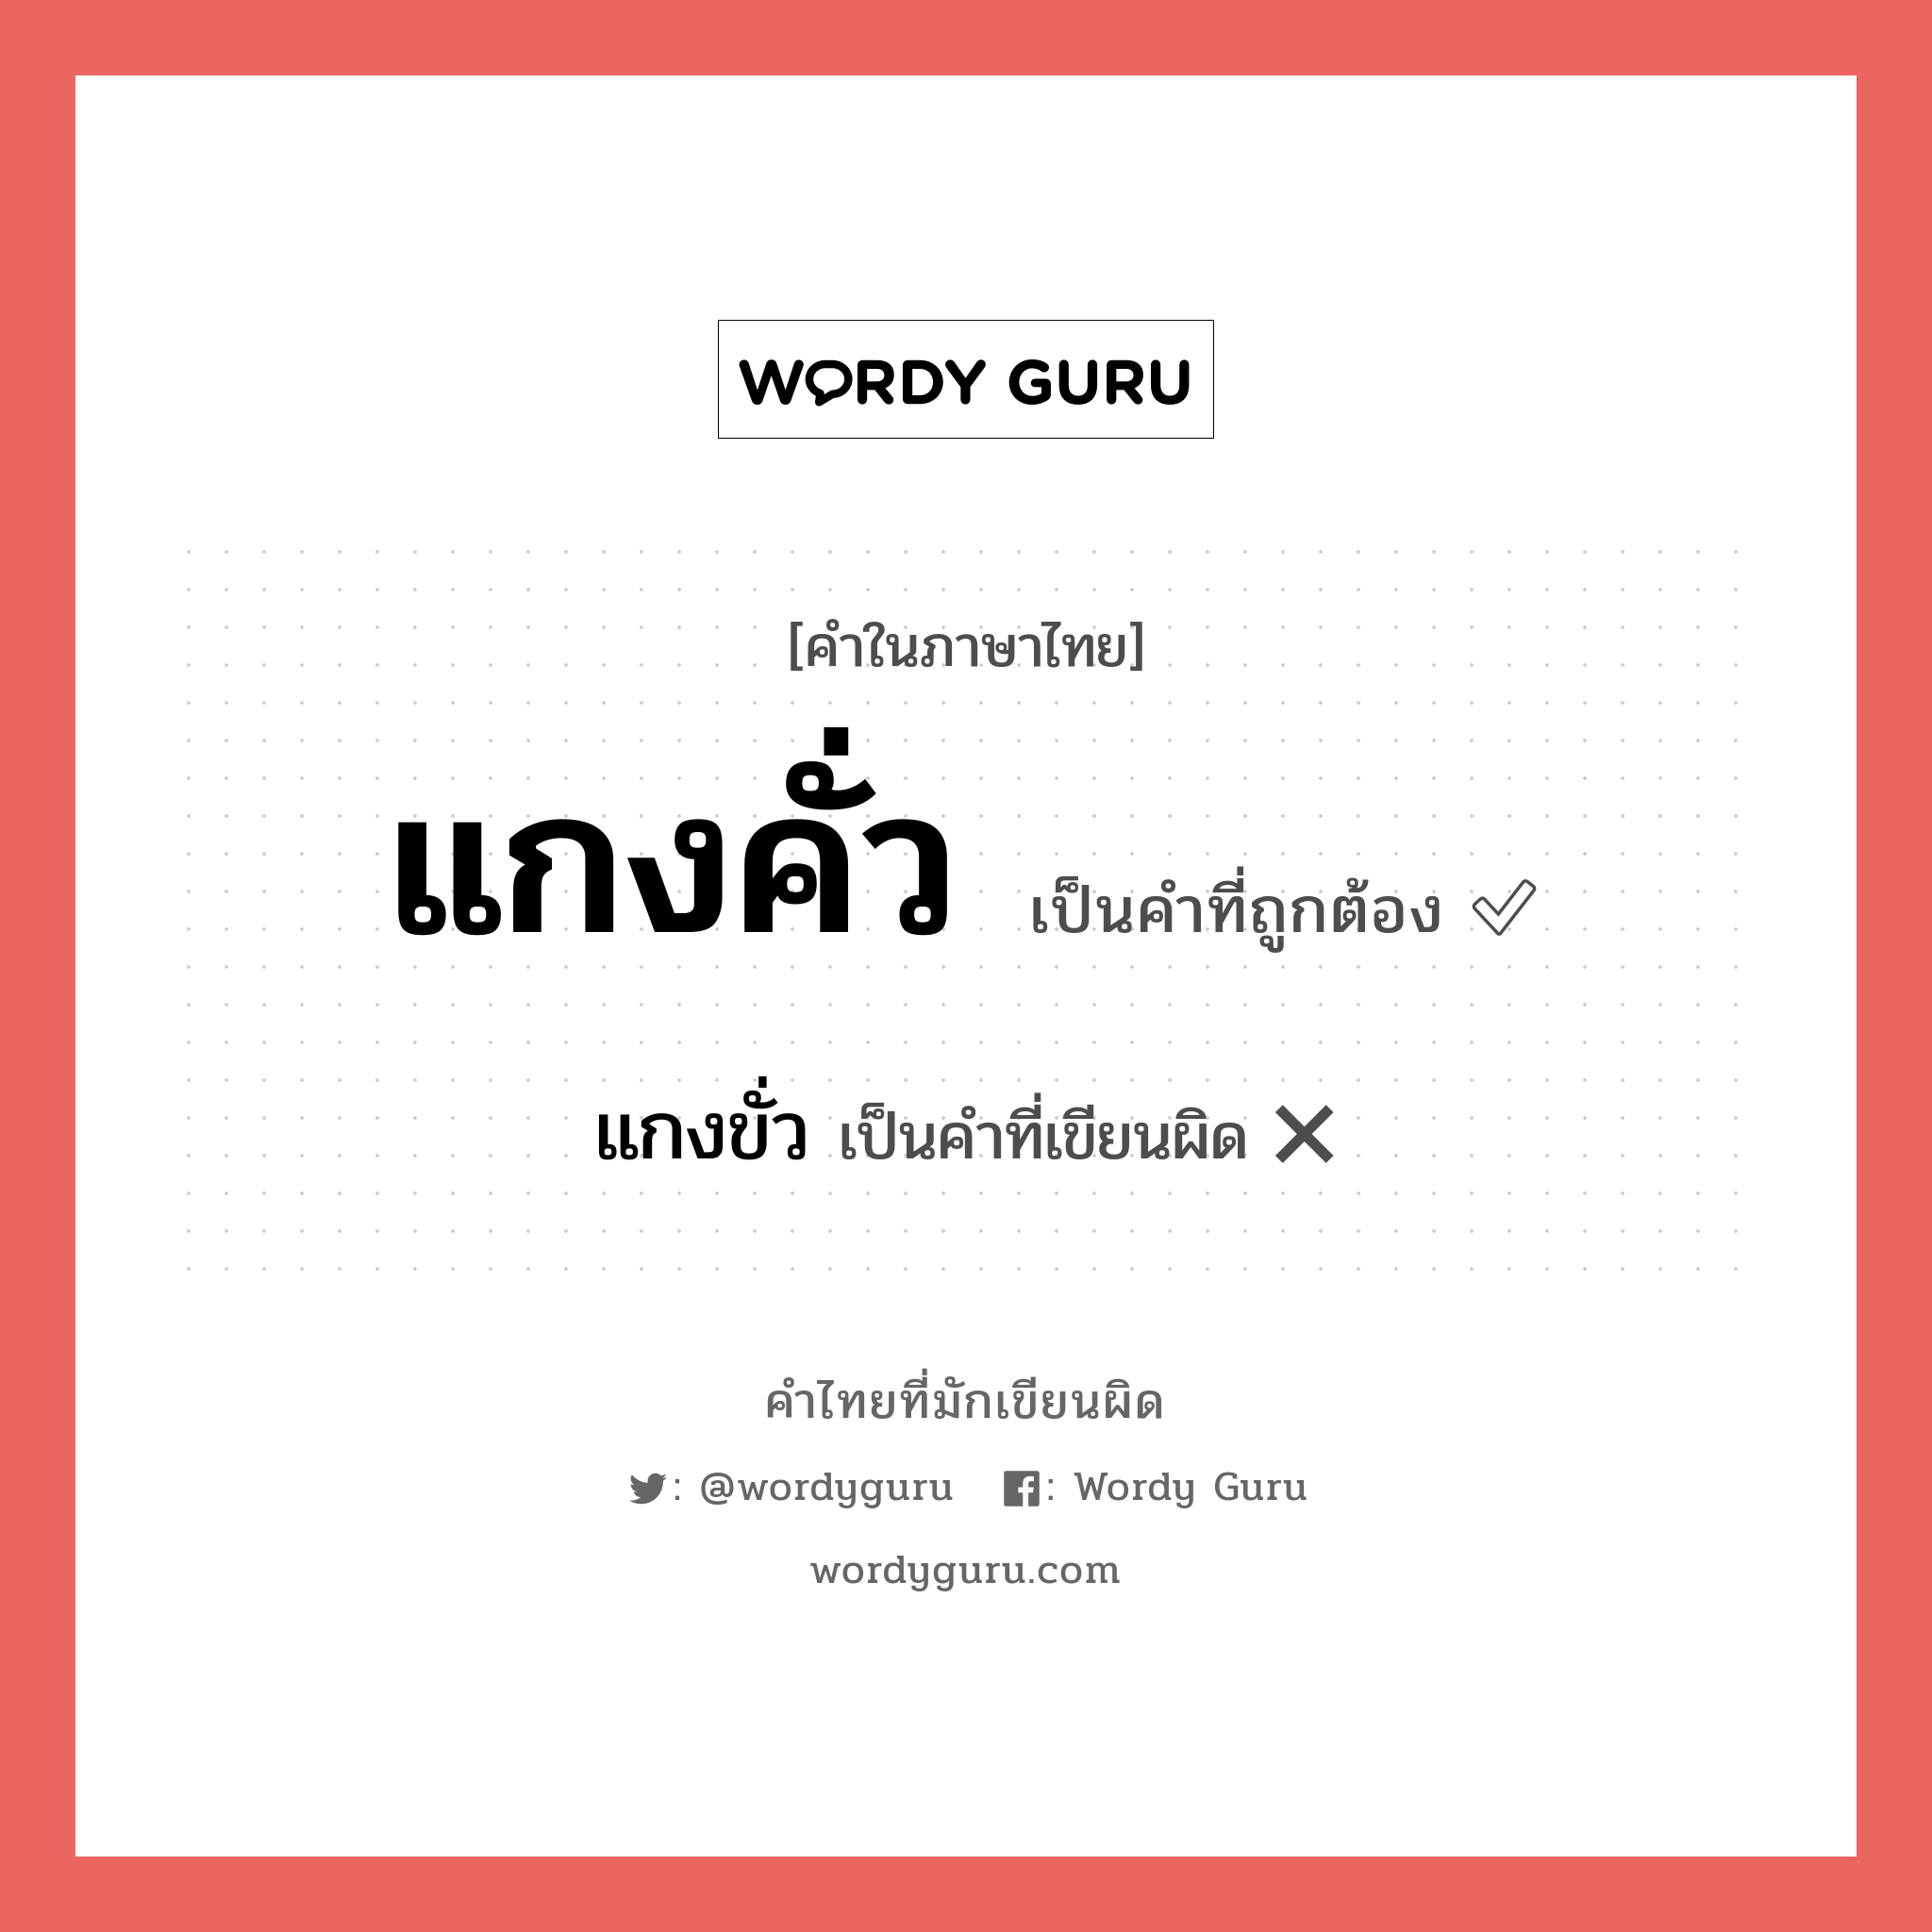 แกงคั่ว หรือ แกงขั่ว คำไหนเขียนถูก?, คำในภาษาไทยที่มักเขียนผิด แกงคั่ว คำที่ผิด ❌ แกงขั่ว